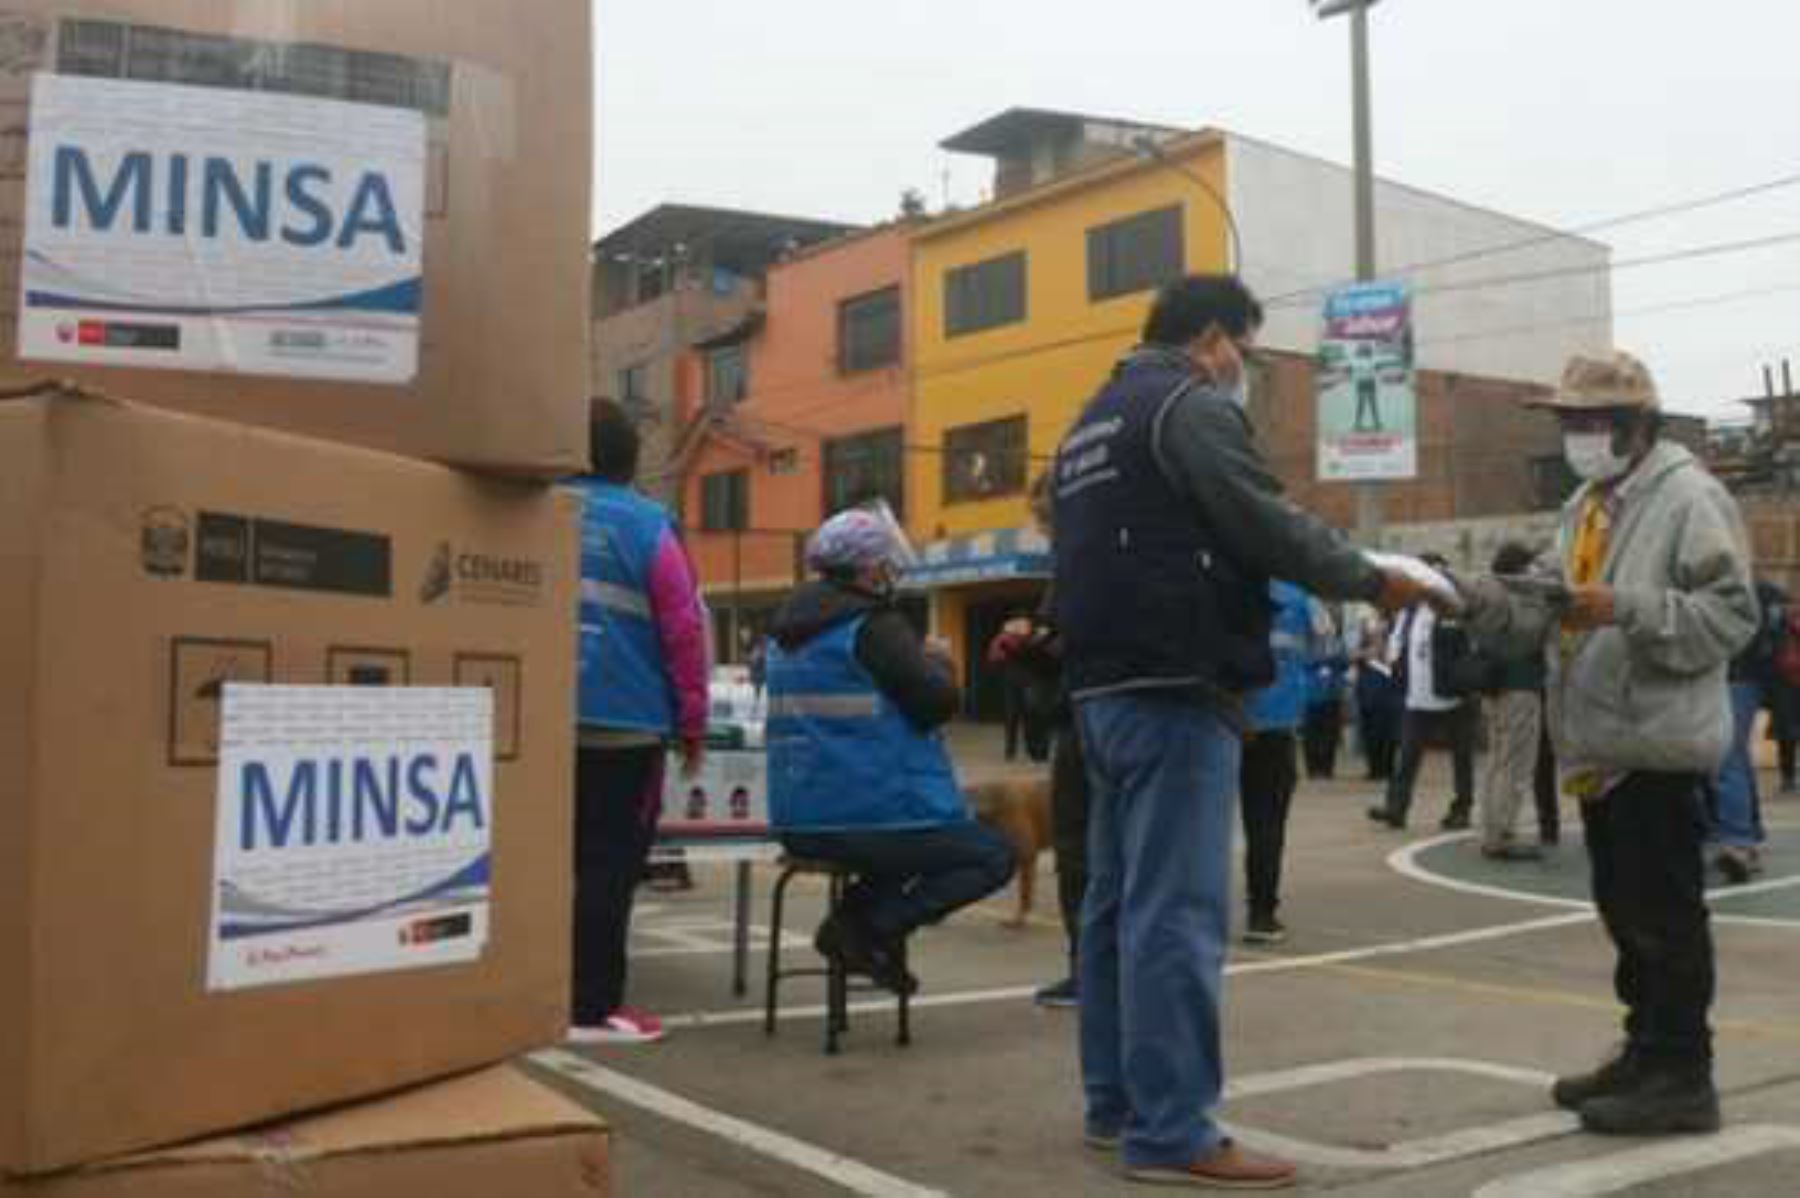 La dirección de Promoción de la Salud del Minsa es la responsable de entregar a la población más vulnerable en Lima y regiones, un kit compuesto por dos mascarillas textiles de uso comunitario y 12 mascarillas quirúrgicas descartables. Foto: ANDINA/Minsa.